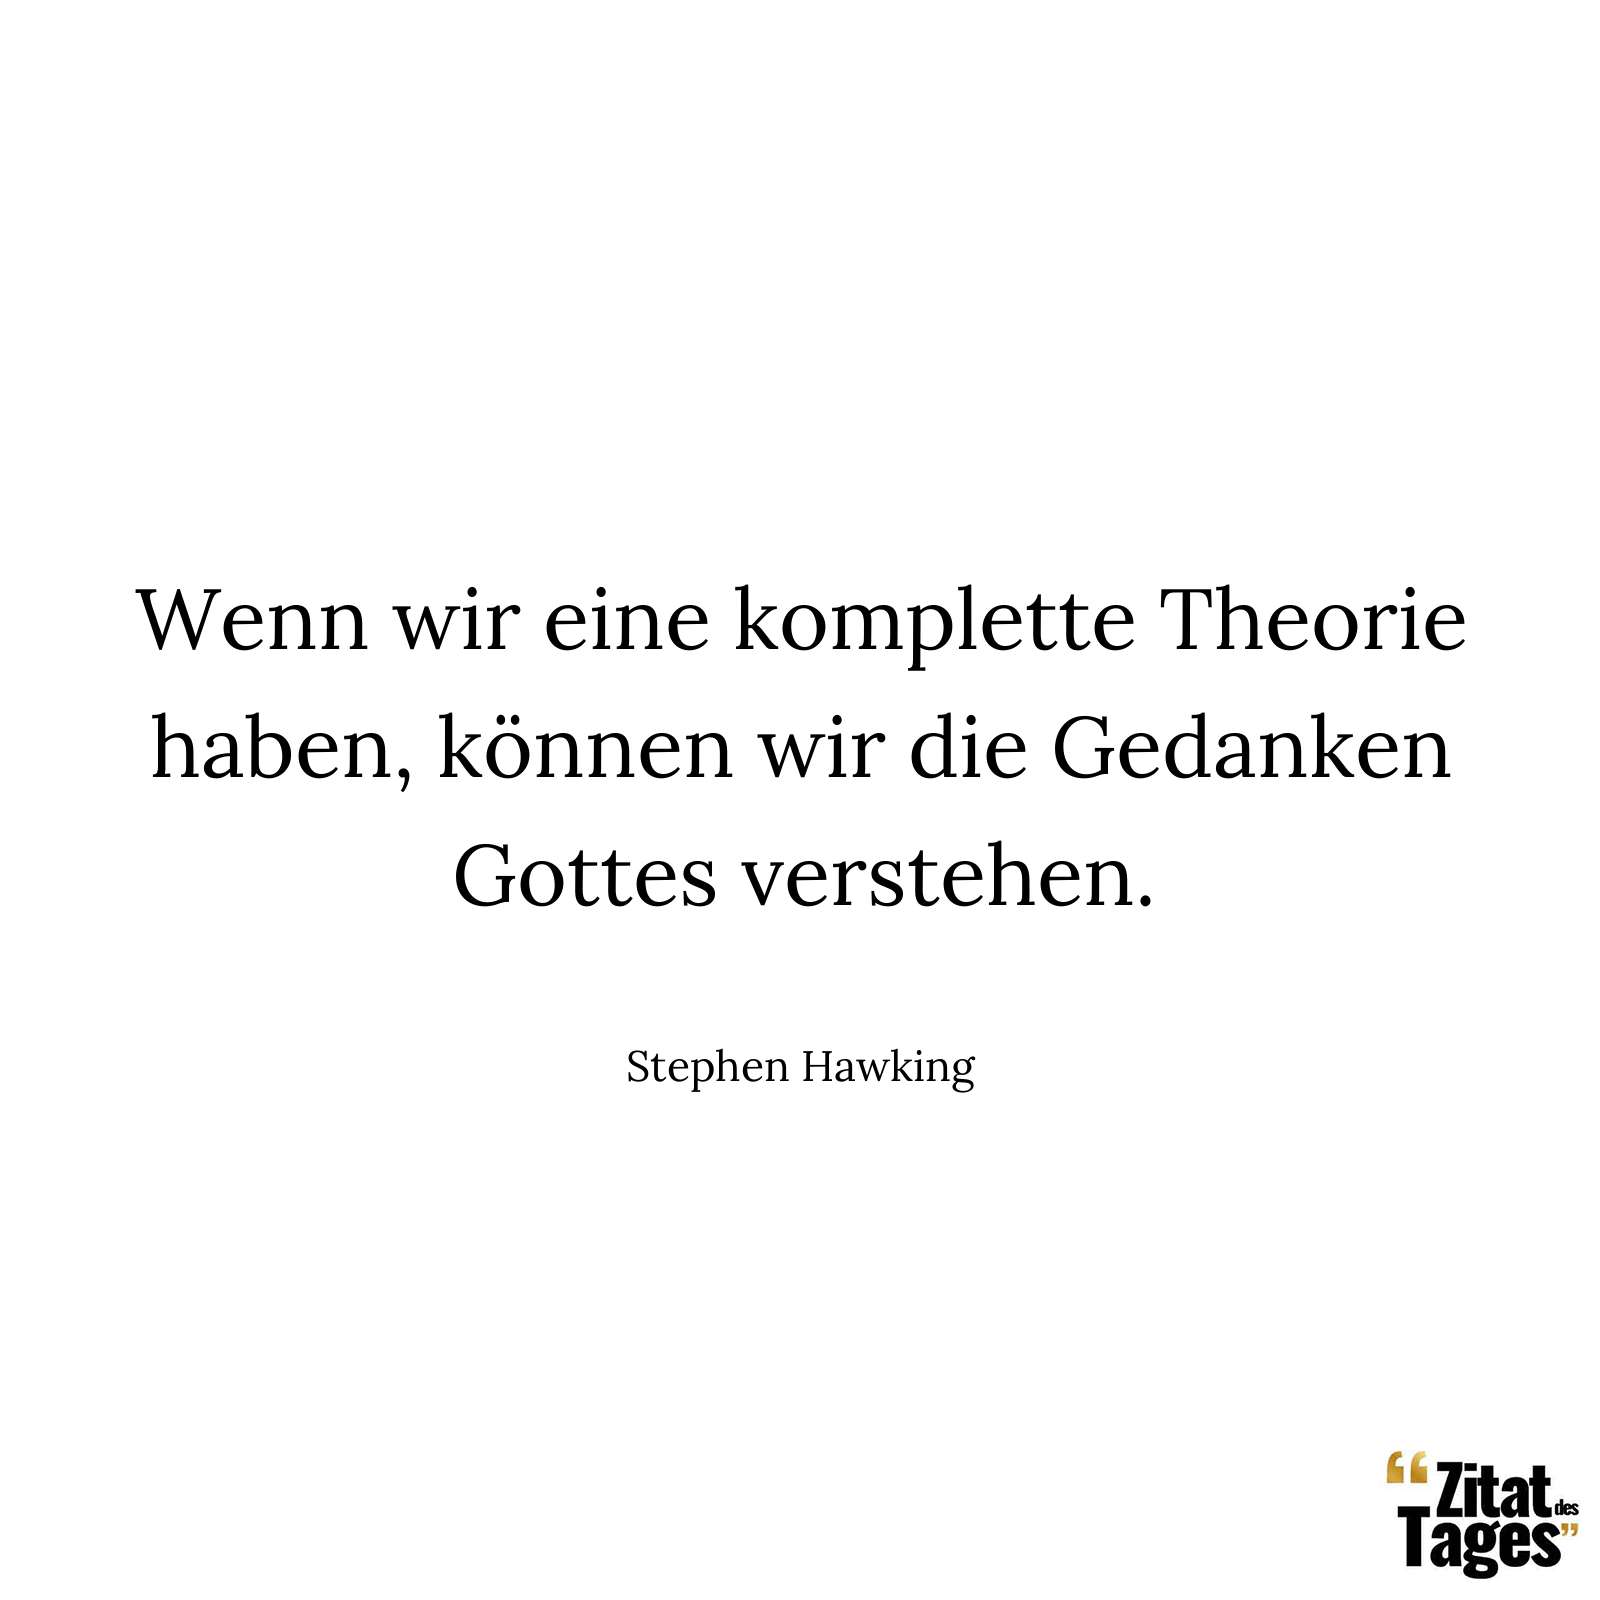 Wenn wir eine komplette Theorie haben, können wir die Gedanken Gottes verstehen. - Stephen Hawking